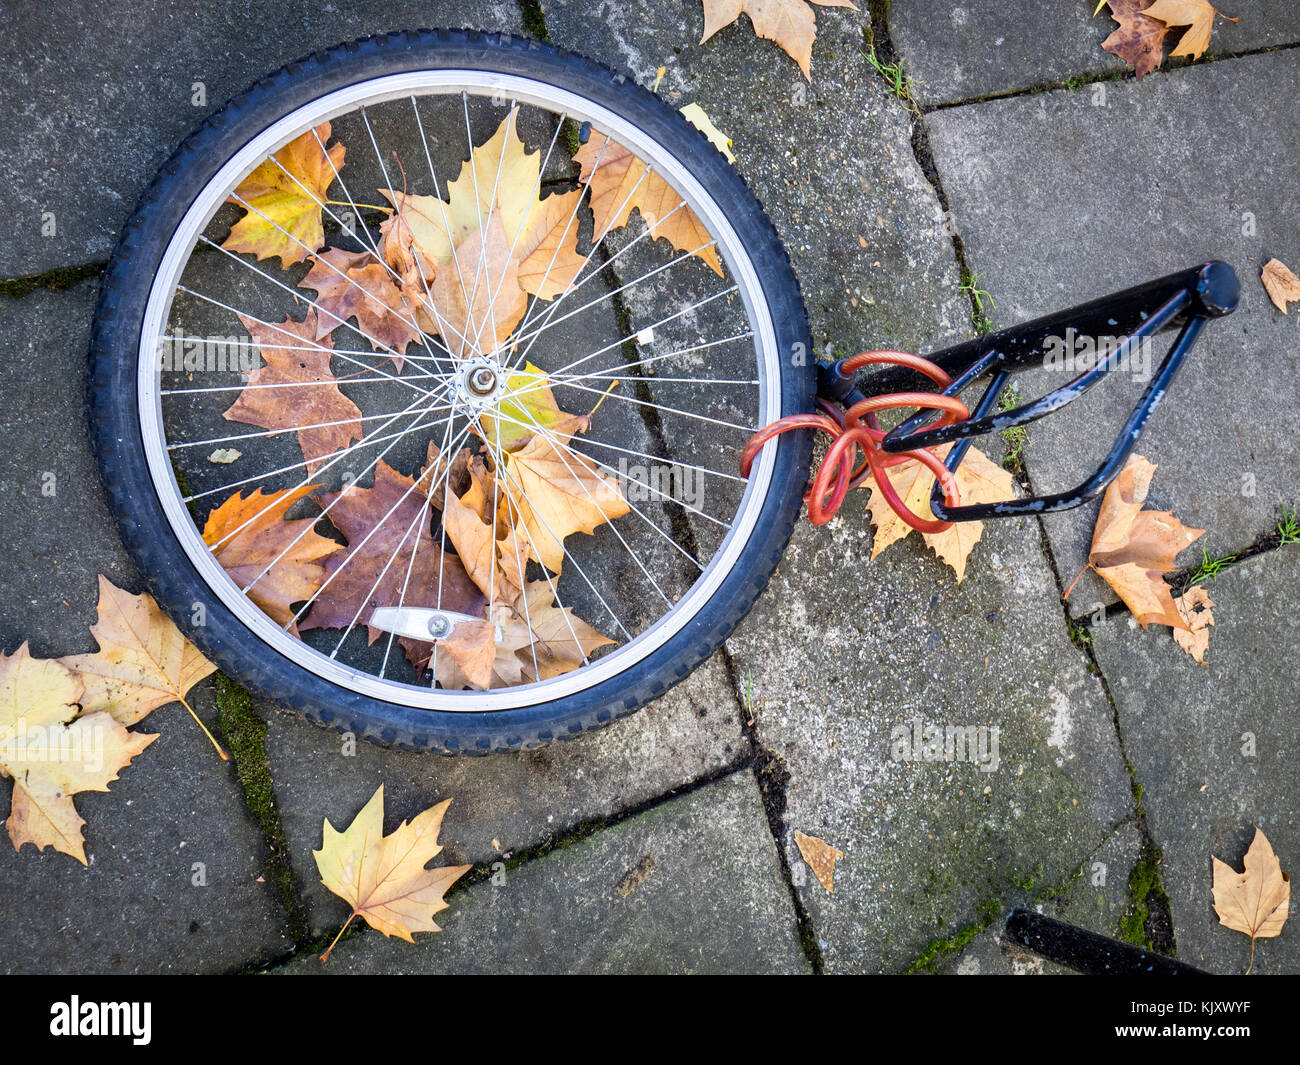 Vélo volé - seulement la roue avant, qui a été verrouillé sur un post, reste parmi les feuilles d'automne Banque D'Images